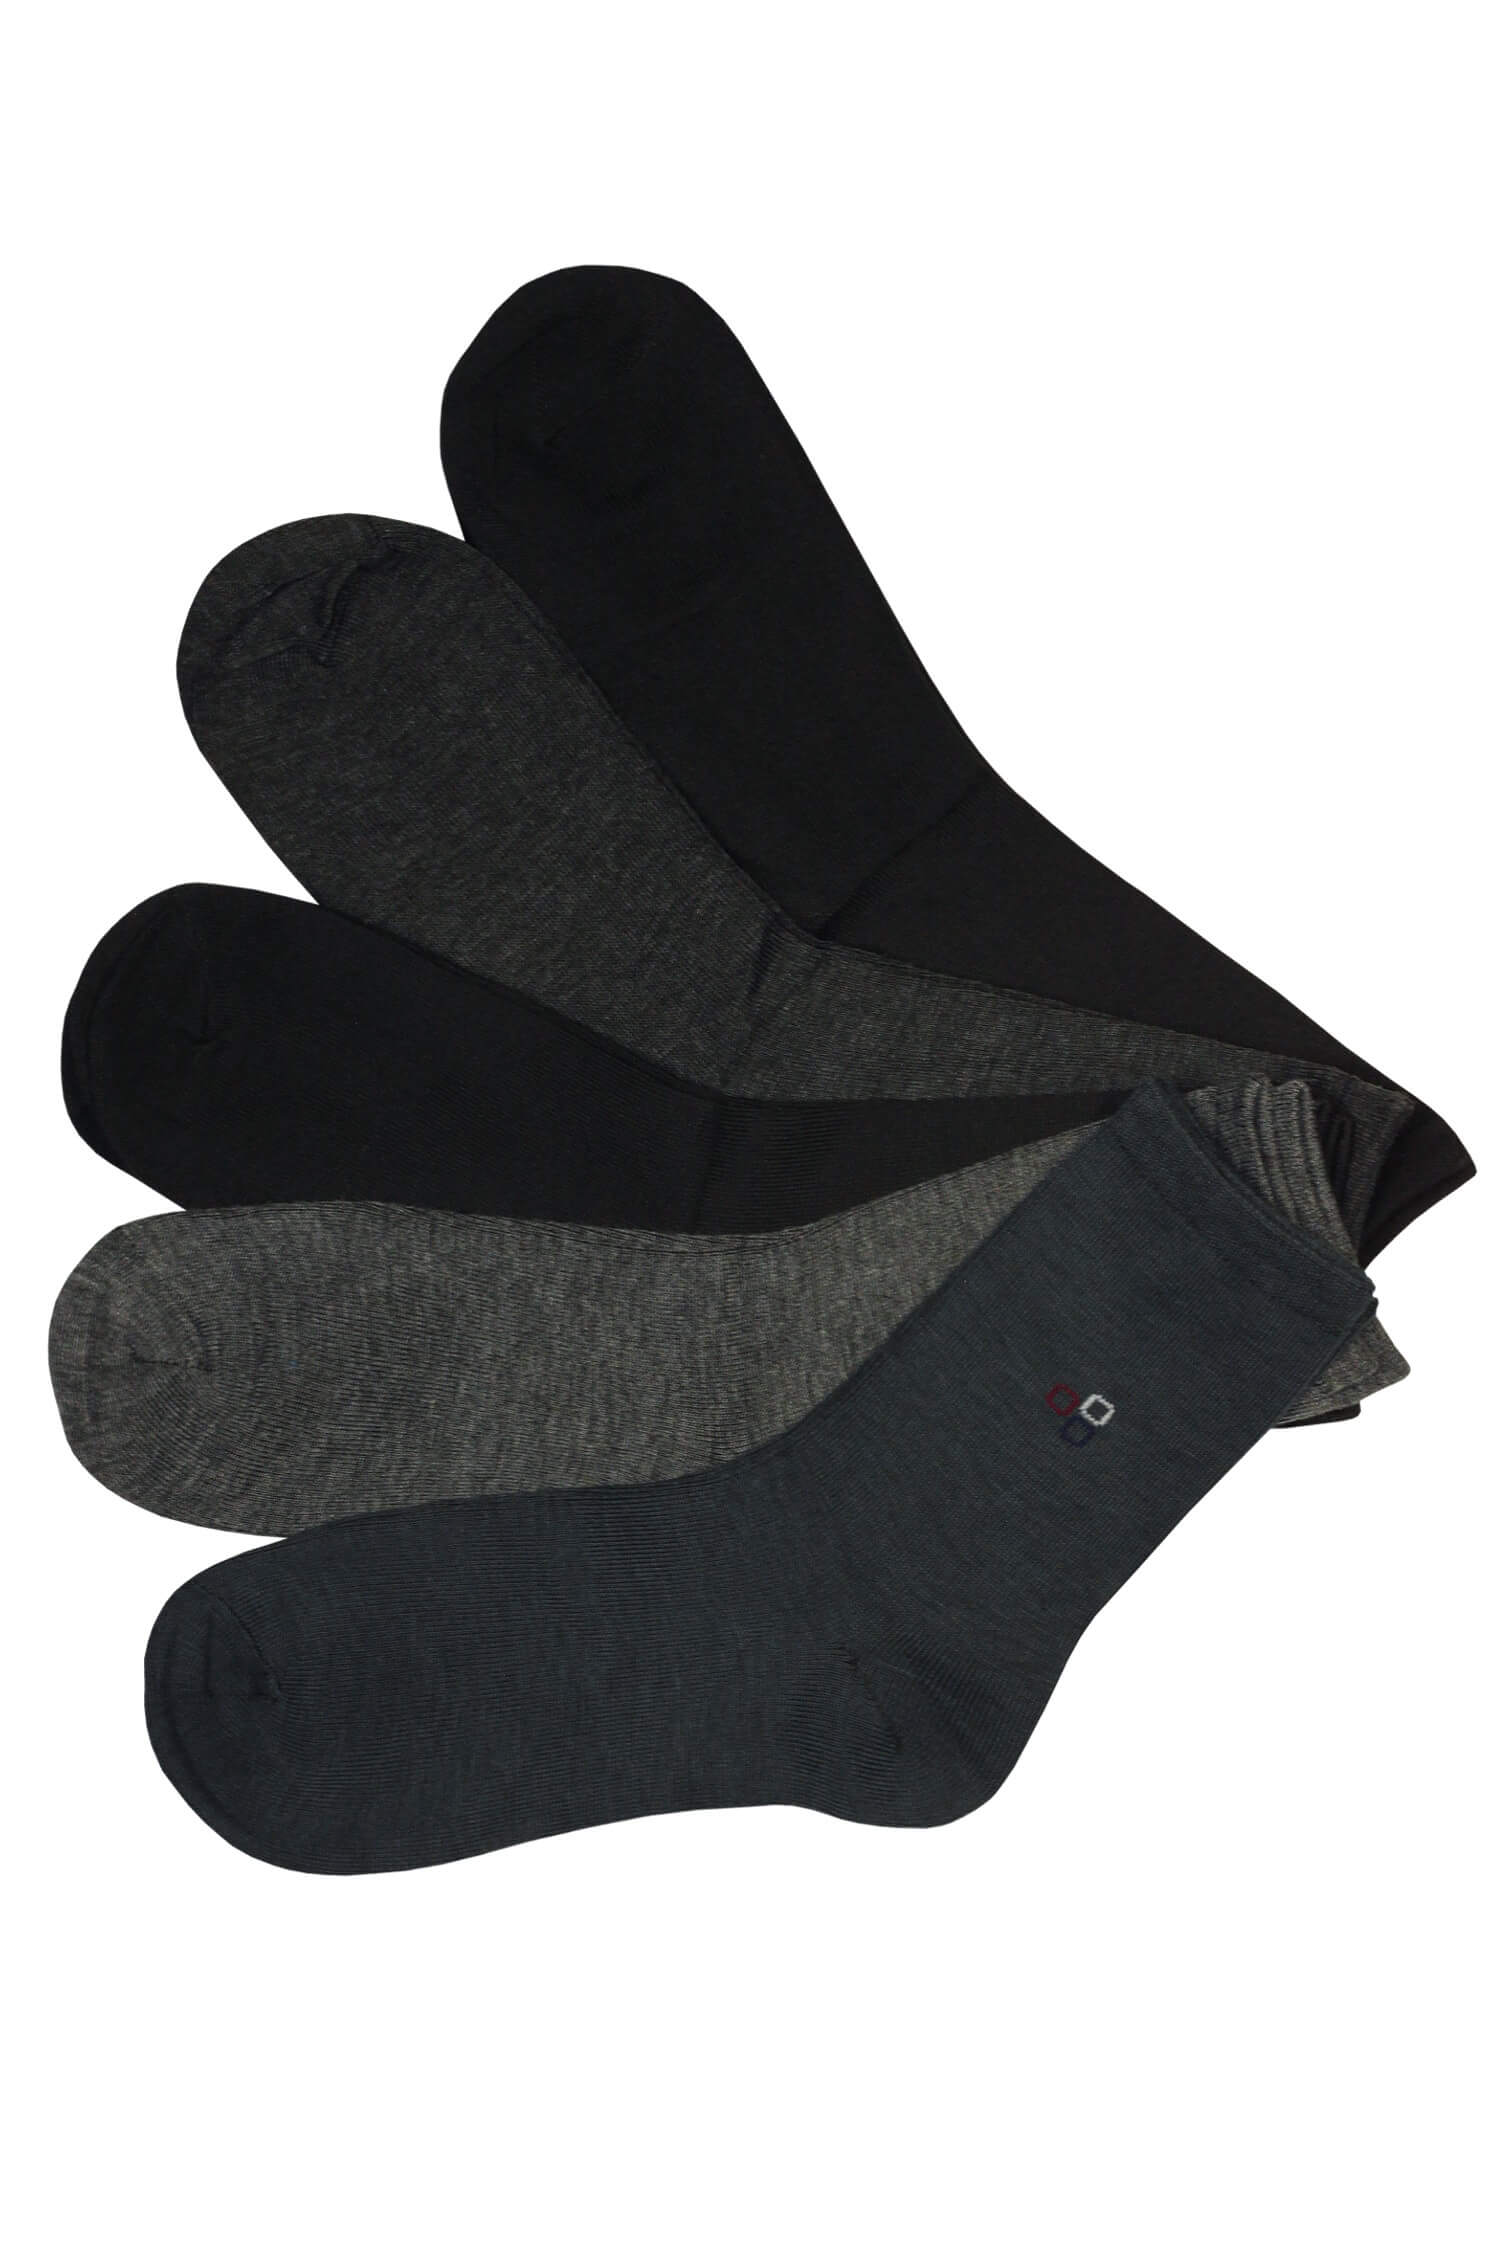 Pánské levné bambusové ponožky B904 - 5 párů 39-42 vícebarevná